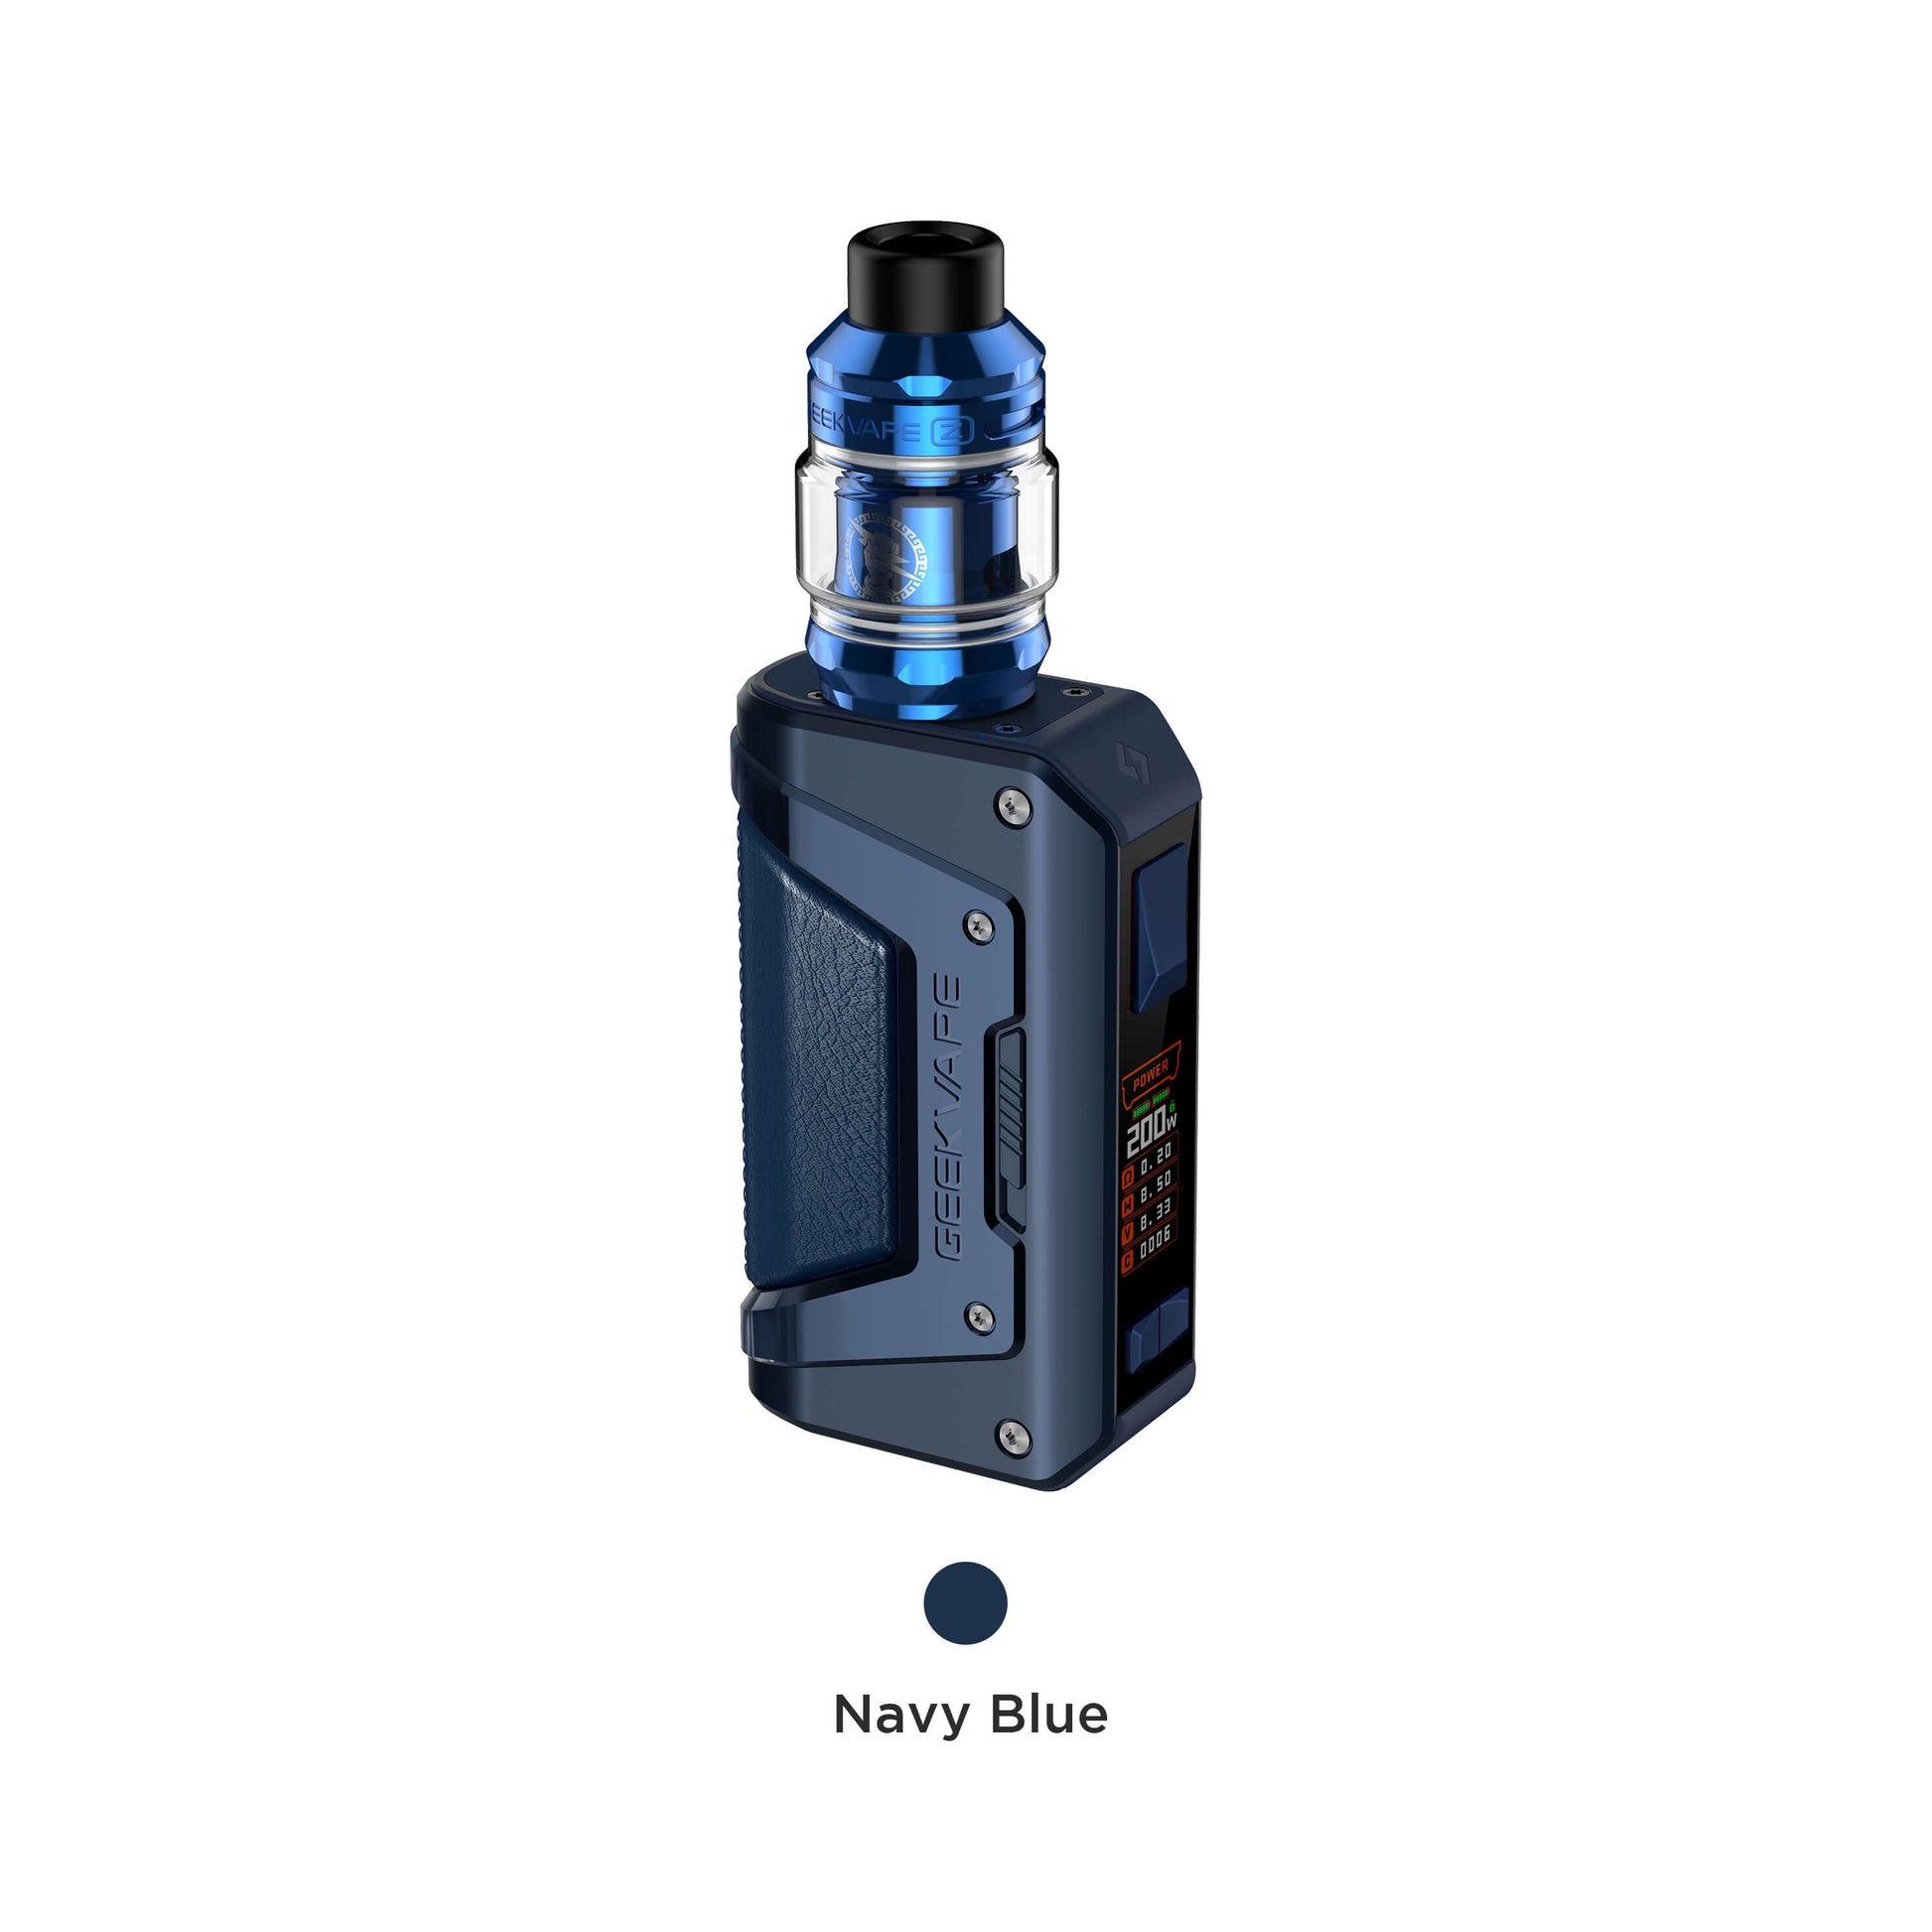 navy blue color of vape mod